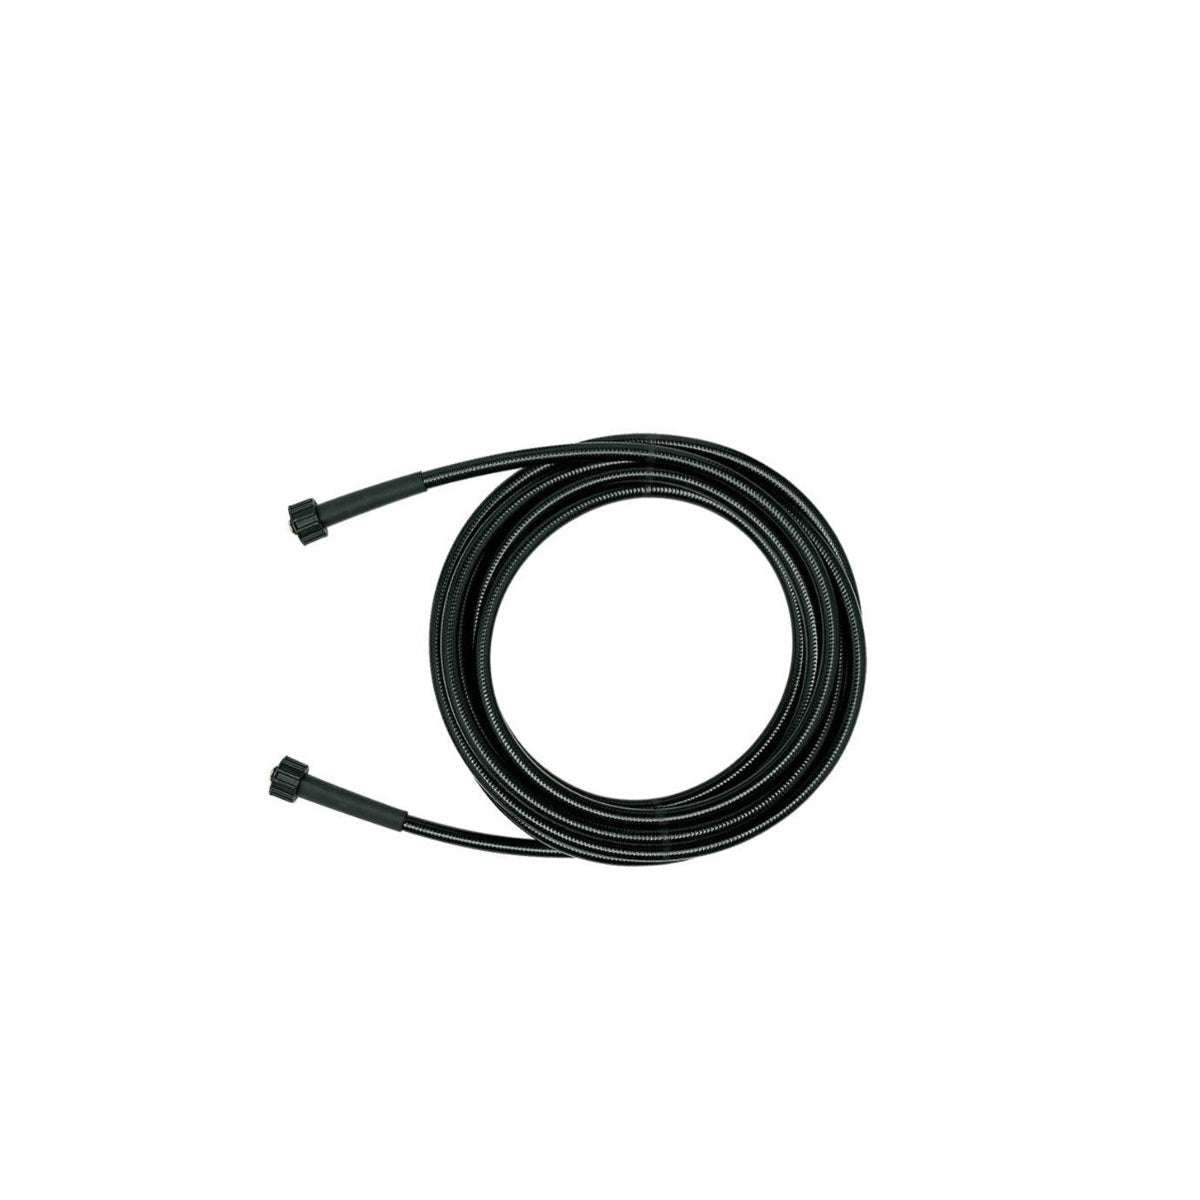 High pressure reinforced hose (10 m) HP10 MT 5/16 3/8" - Annovi Reverberi 3160160